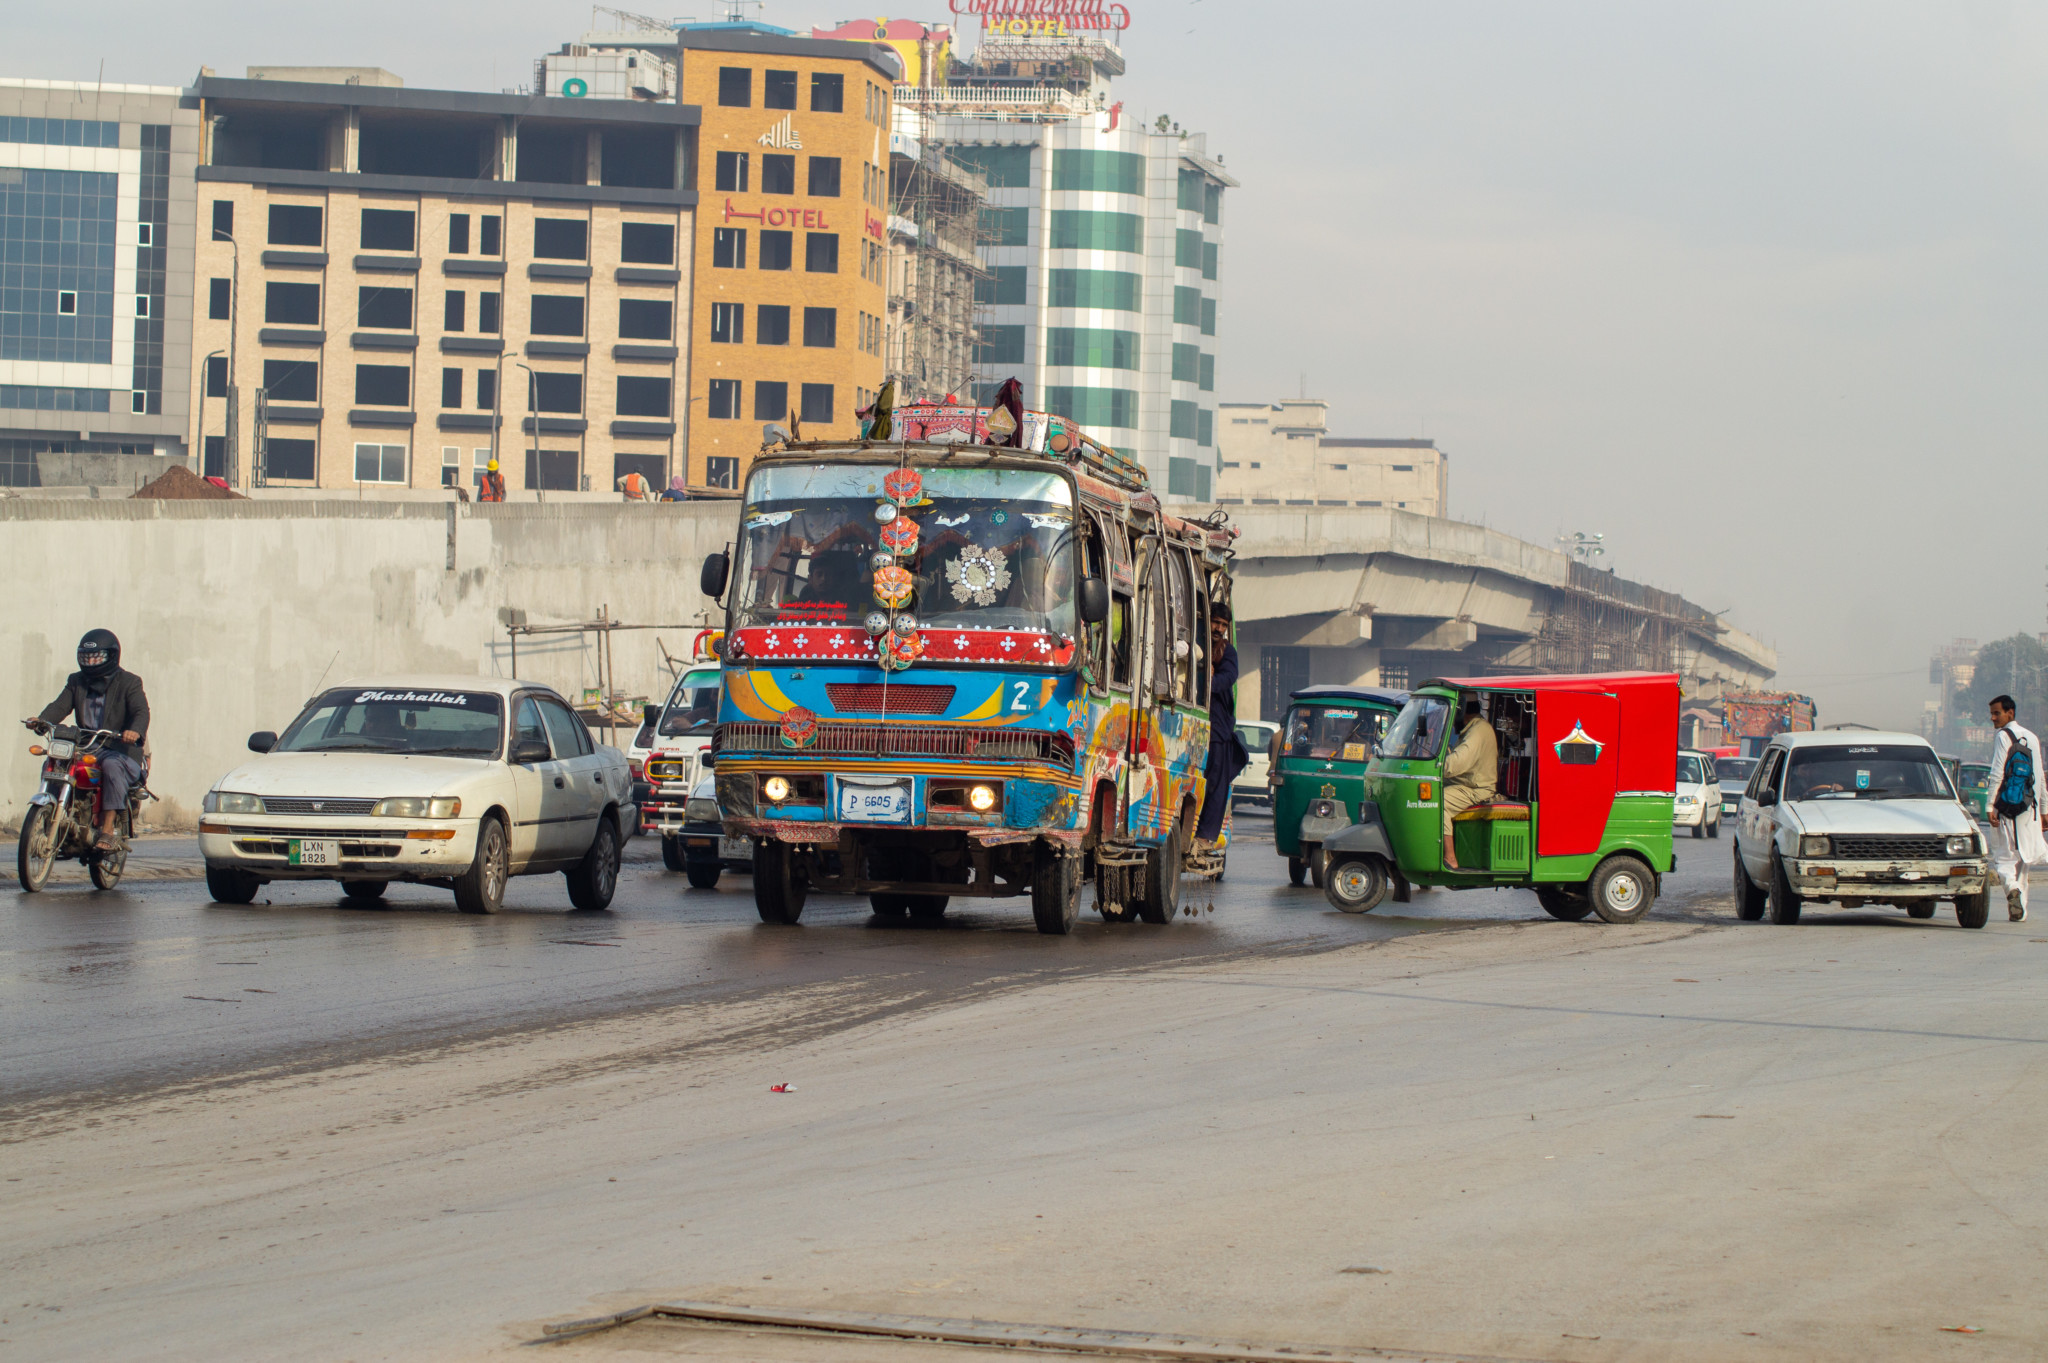 Busse fahren auch in den Städten von Pakistan